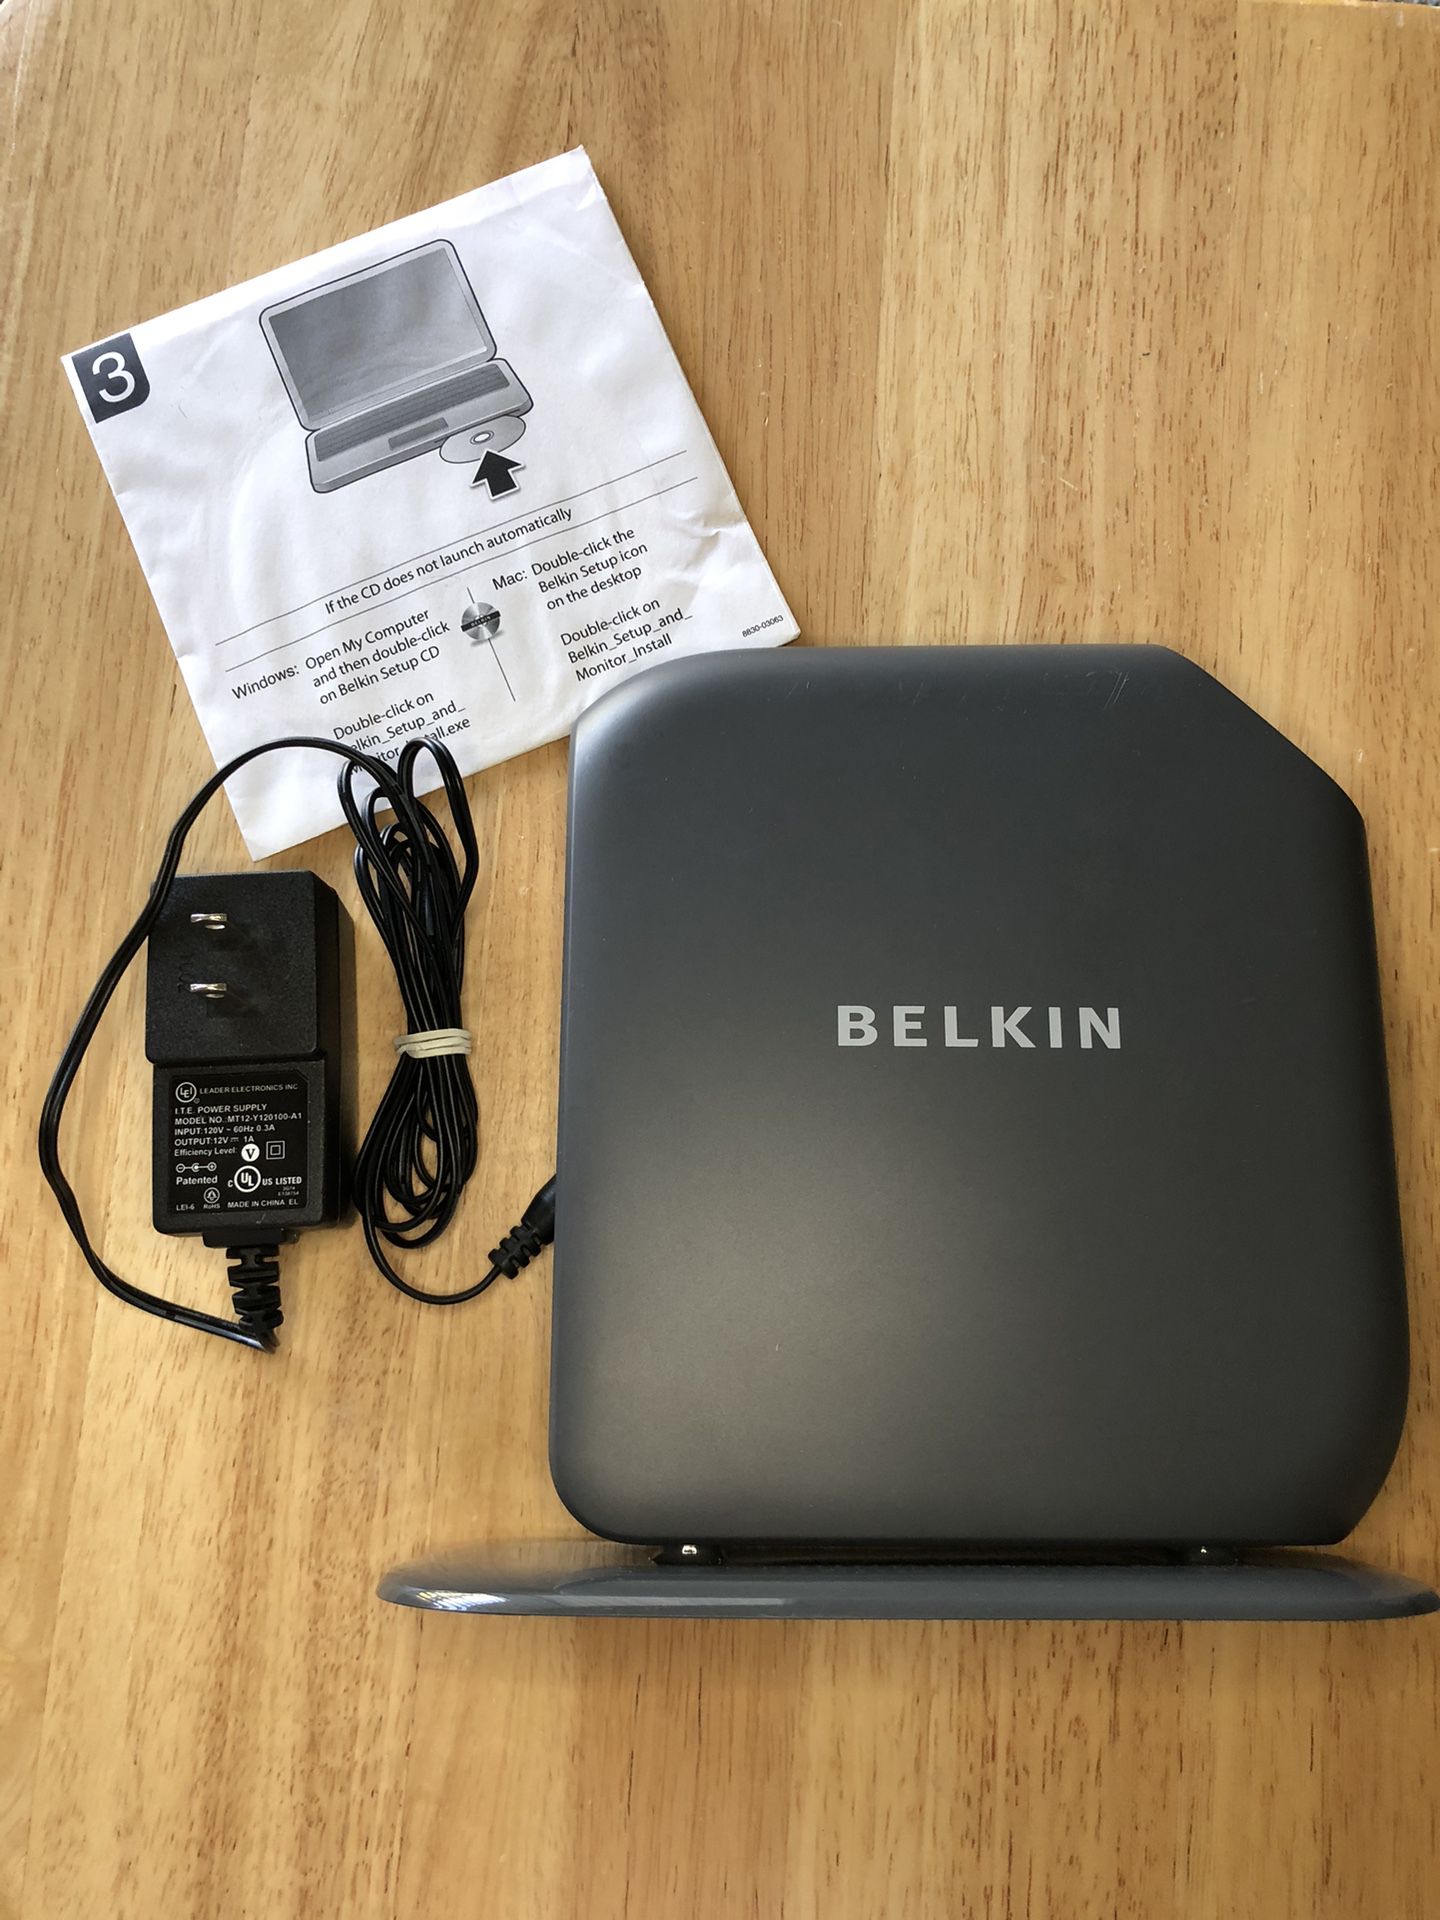 BELKIN  F7D3302 v1 802.11-N300 WiFi Router